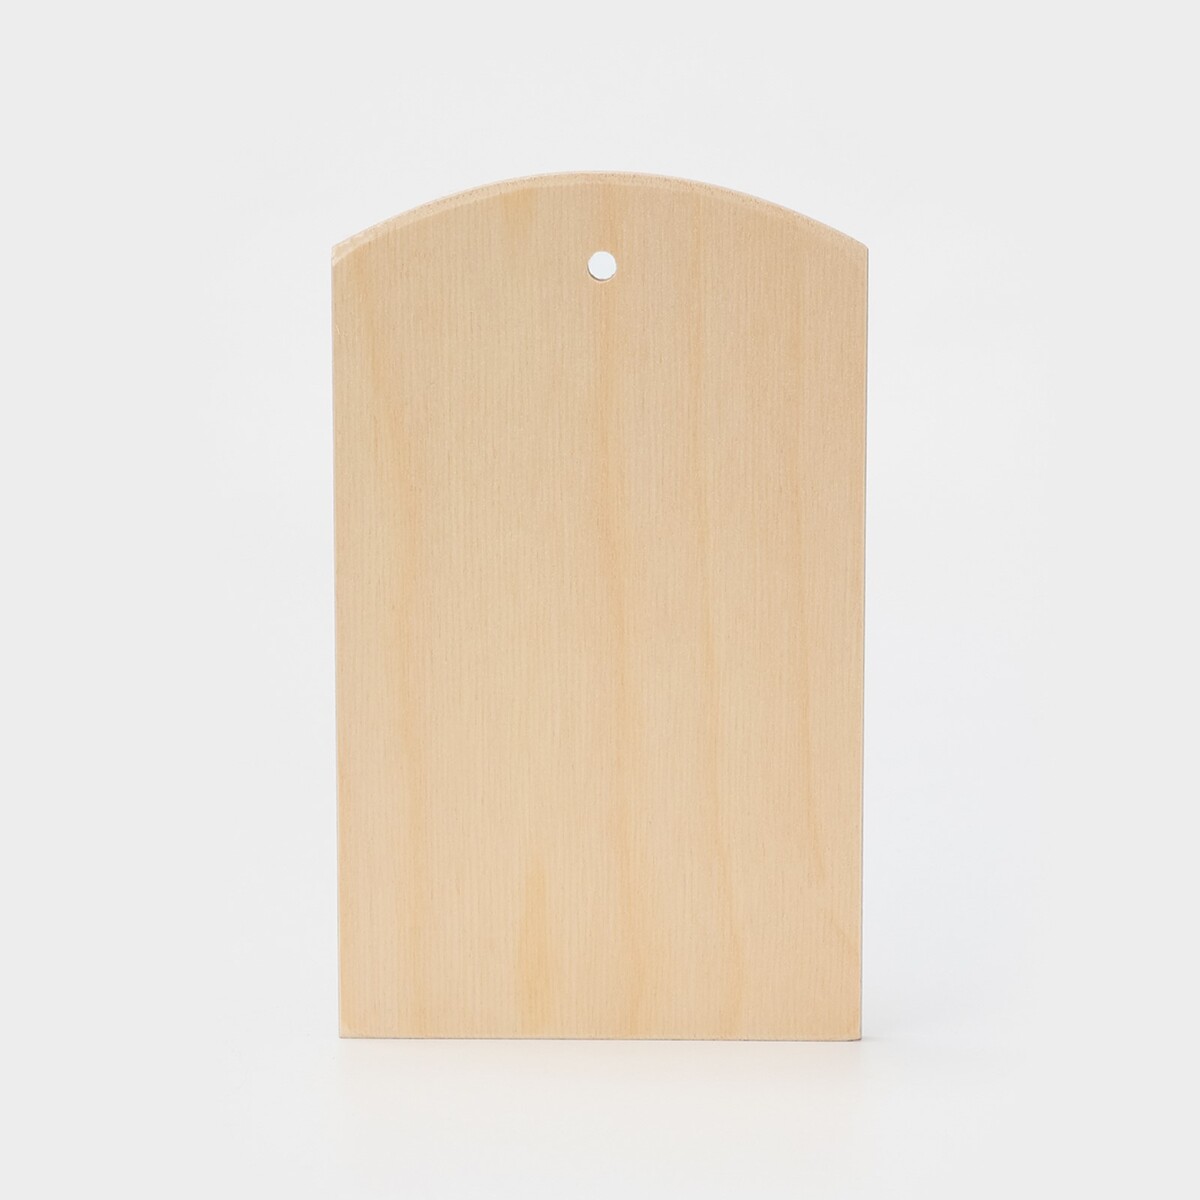 Доска разделочная деревянная с отверстием доляна, 21×12,5 см, фанера салфетница деревянная доляна 13 5×13 5×8 см мокко